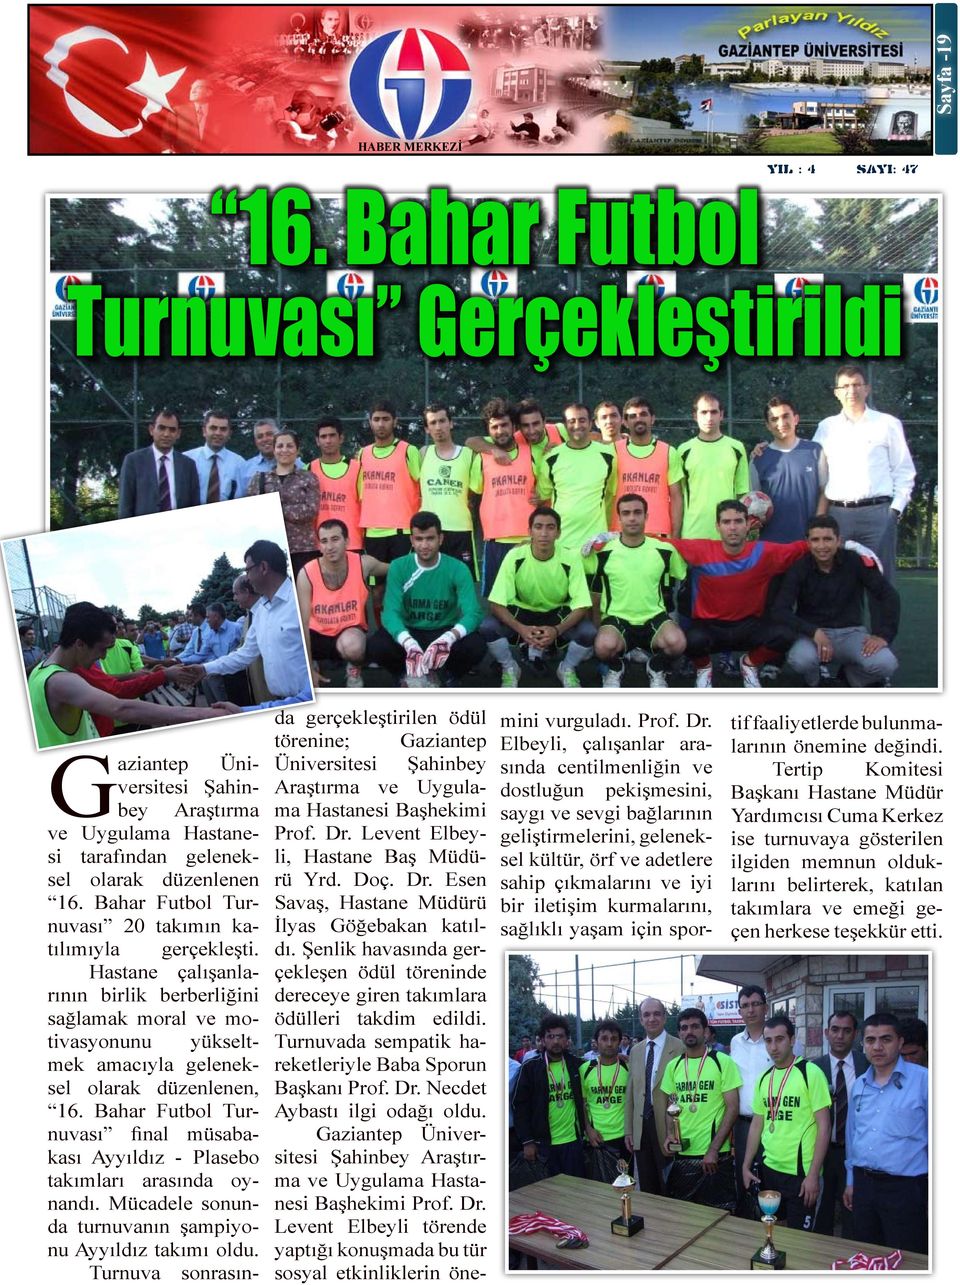 Bahar Futbol Turnuvası final müsabakası Ayyıldız - Plasebo takımları arasında oynandı. Mücadele sonunda turnuvanın şampiyonu Ayyıldız takımı oldu.